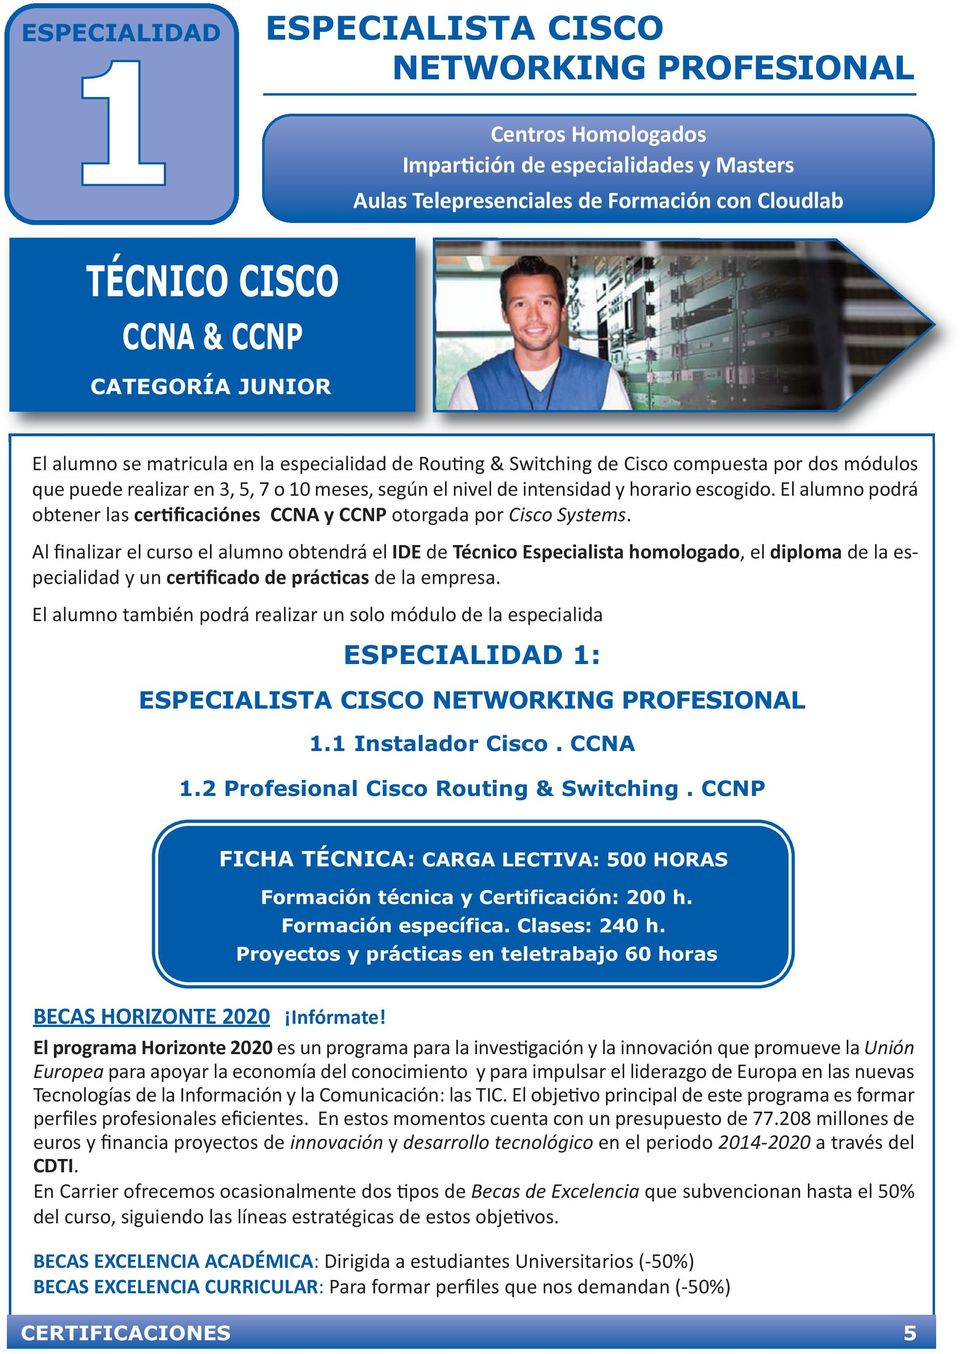 escogido. El alumno podrá obtener las certificaciónes CCNA y CCNP otorgada por Cisco Systems.